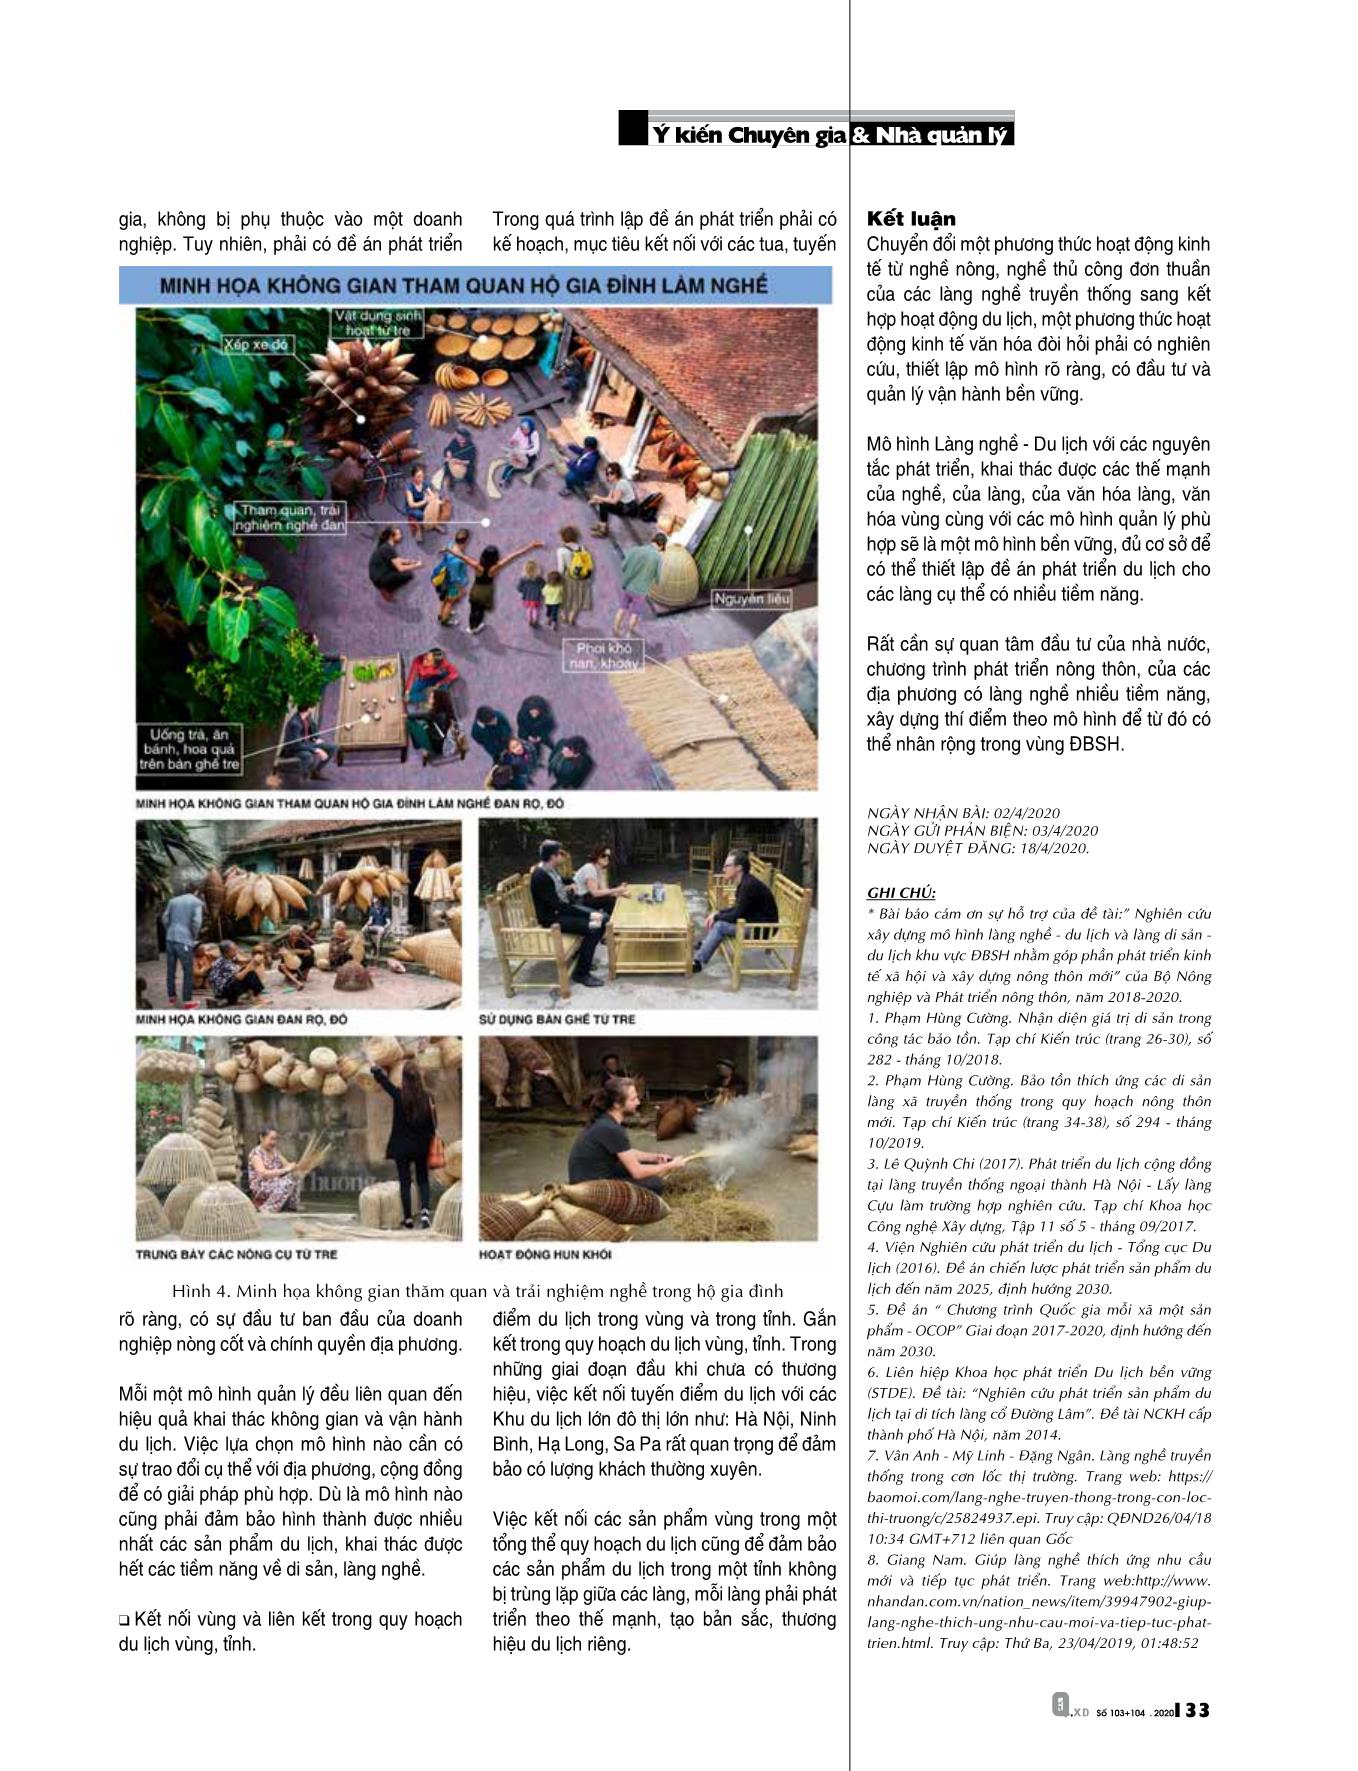 Cách tiếp cận mới trong việc xây dựng mô hình làng nghề - Du lịch trong các làng nghề truyền thống khu vực Đồng bằng sông Hồng trang 6